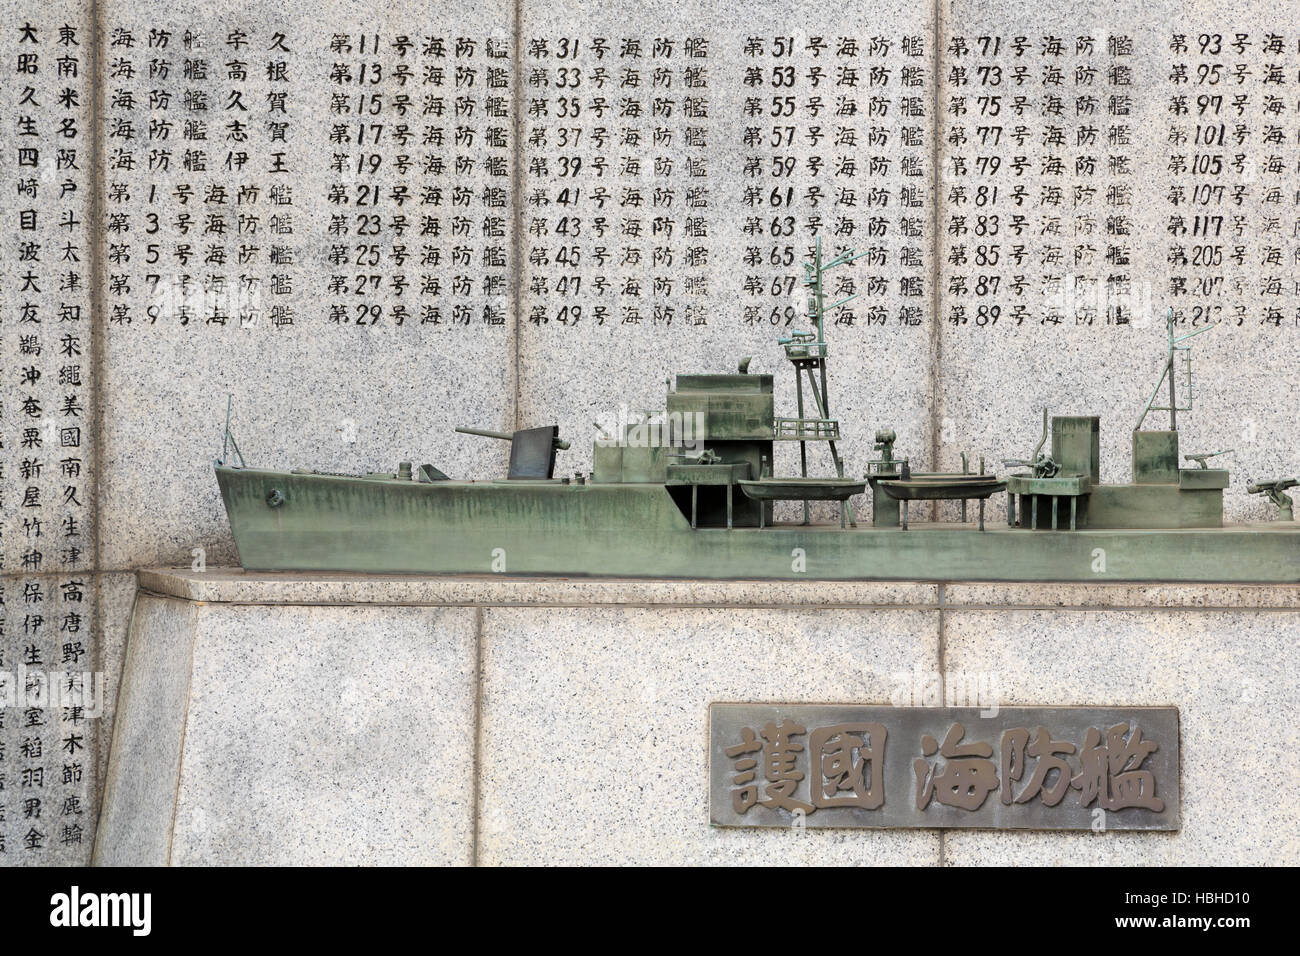 Battleship Memorial, Yushukan Museum, Tokyo, Japan Stock Photo